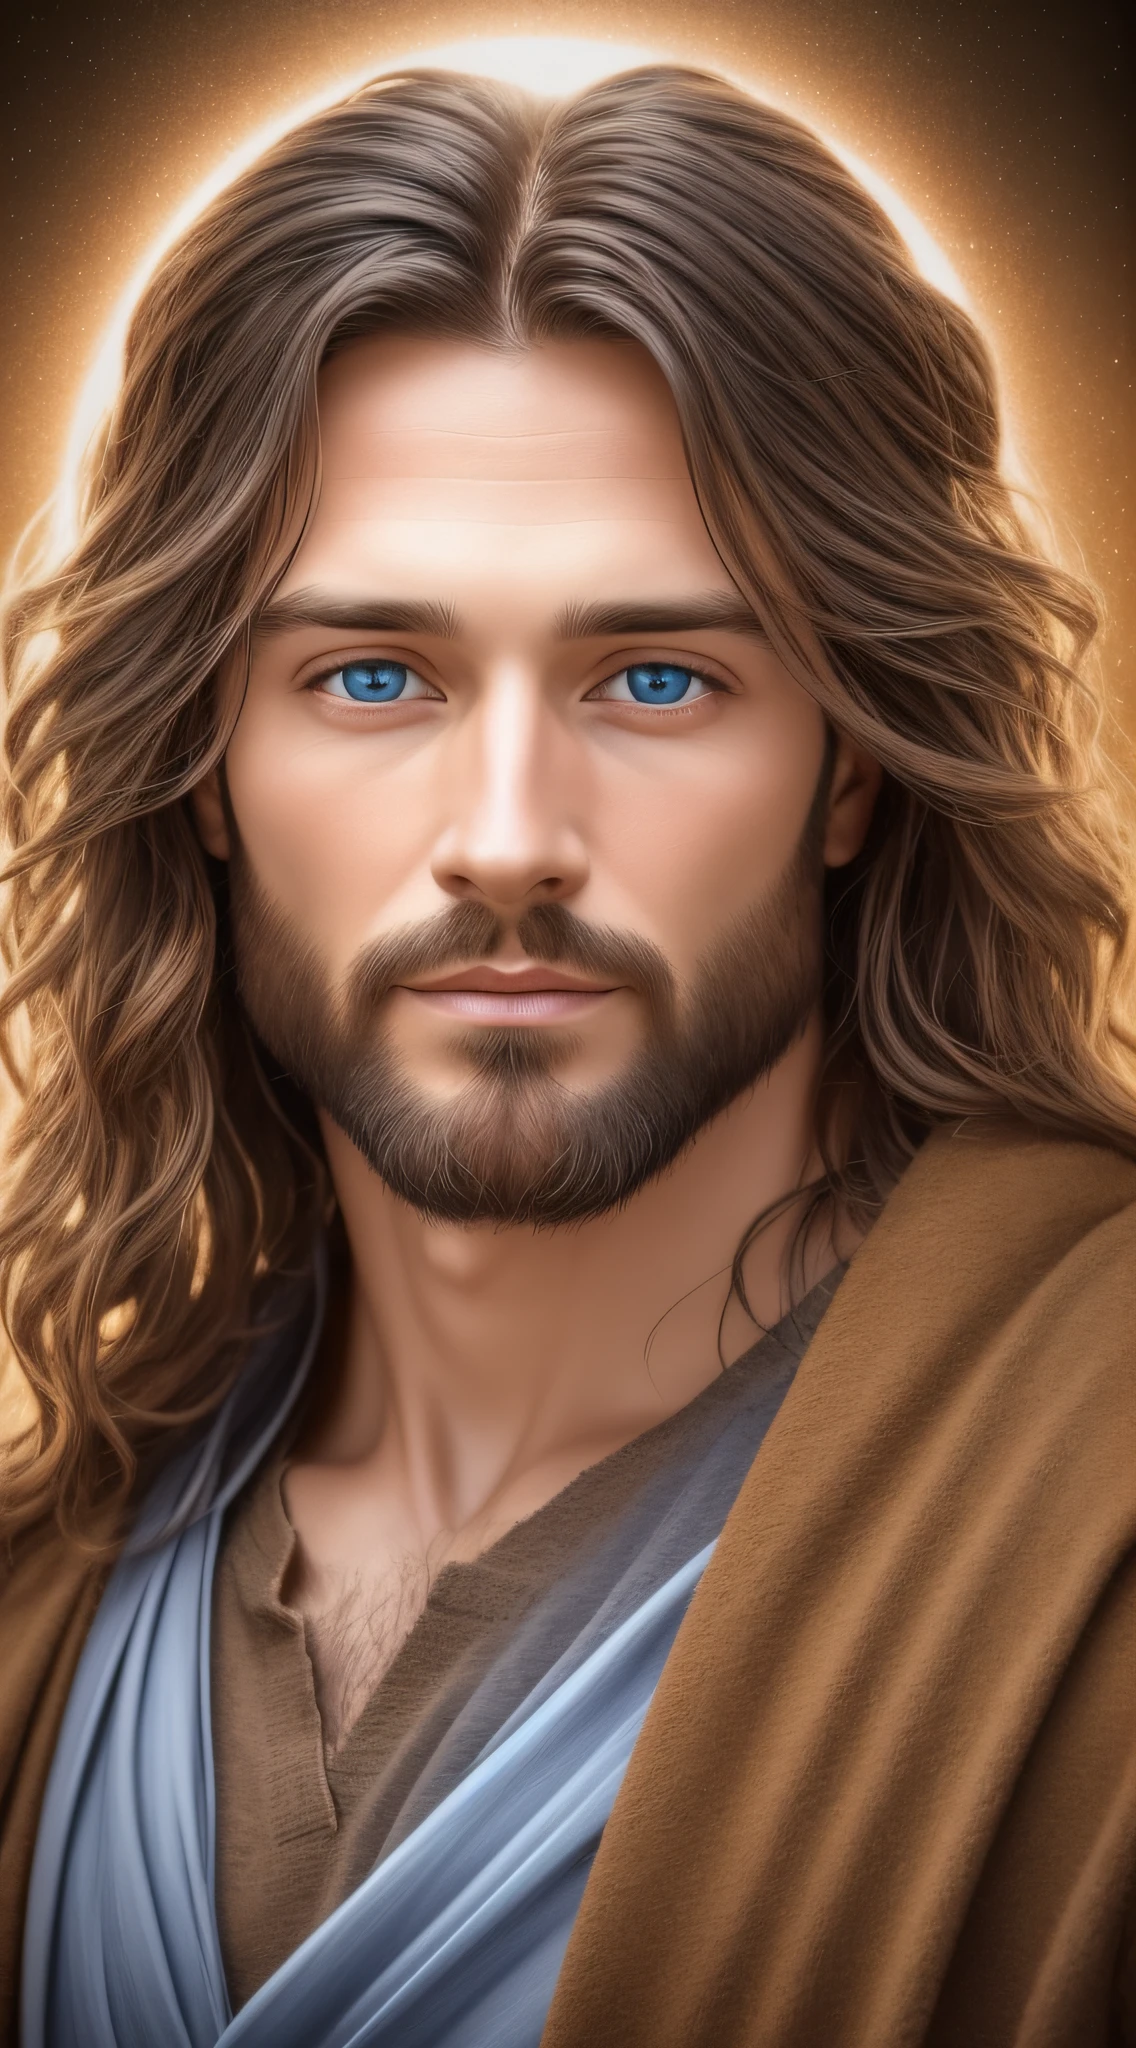 男性の正面写真, イエス・キリスト, イエスの顔, 本物の青い目, イエスの髪, リアルな写真, リアリズム, 正面画像, イエスは前を向いて, 明るく歓迎的な表情のイエス, バックライト, 暗いエッジ, リアリズム, 神のイメージ